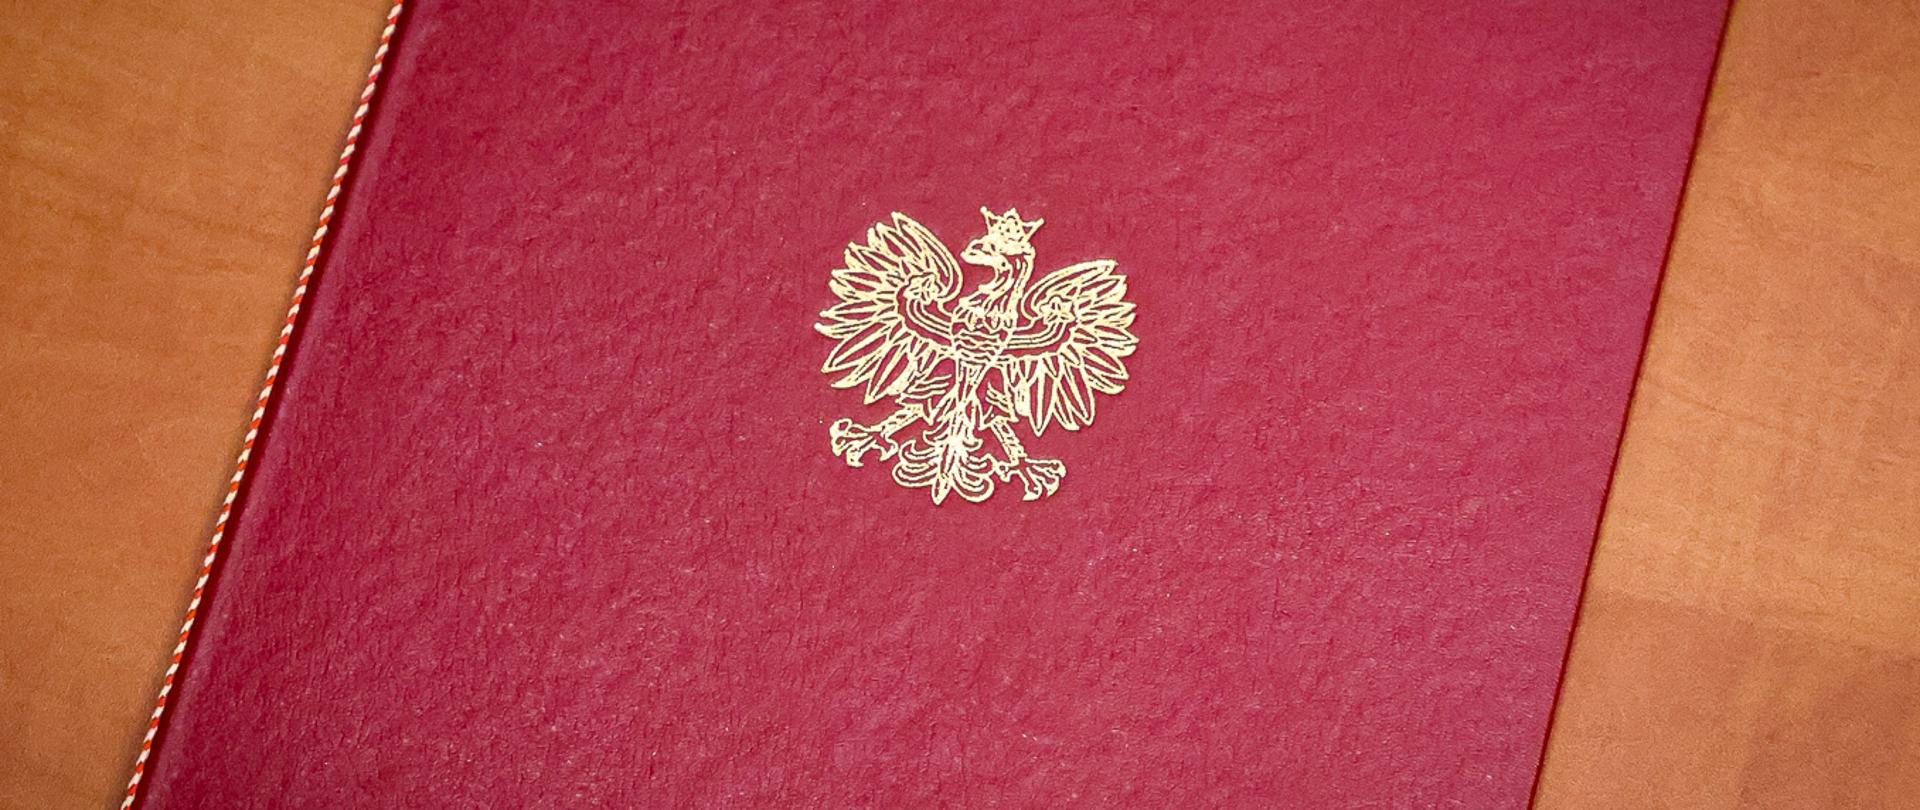 Teczka czerwona z logotypem Orła Białego